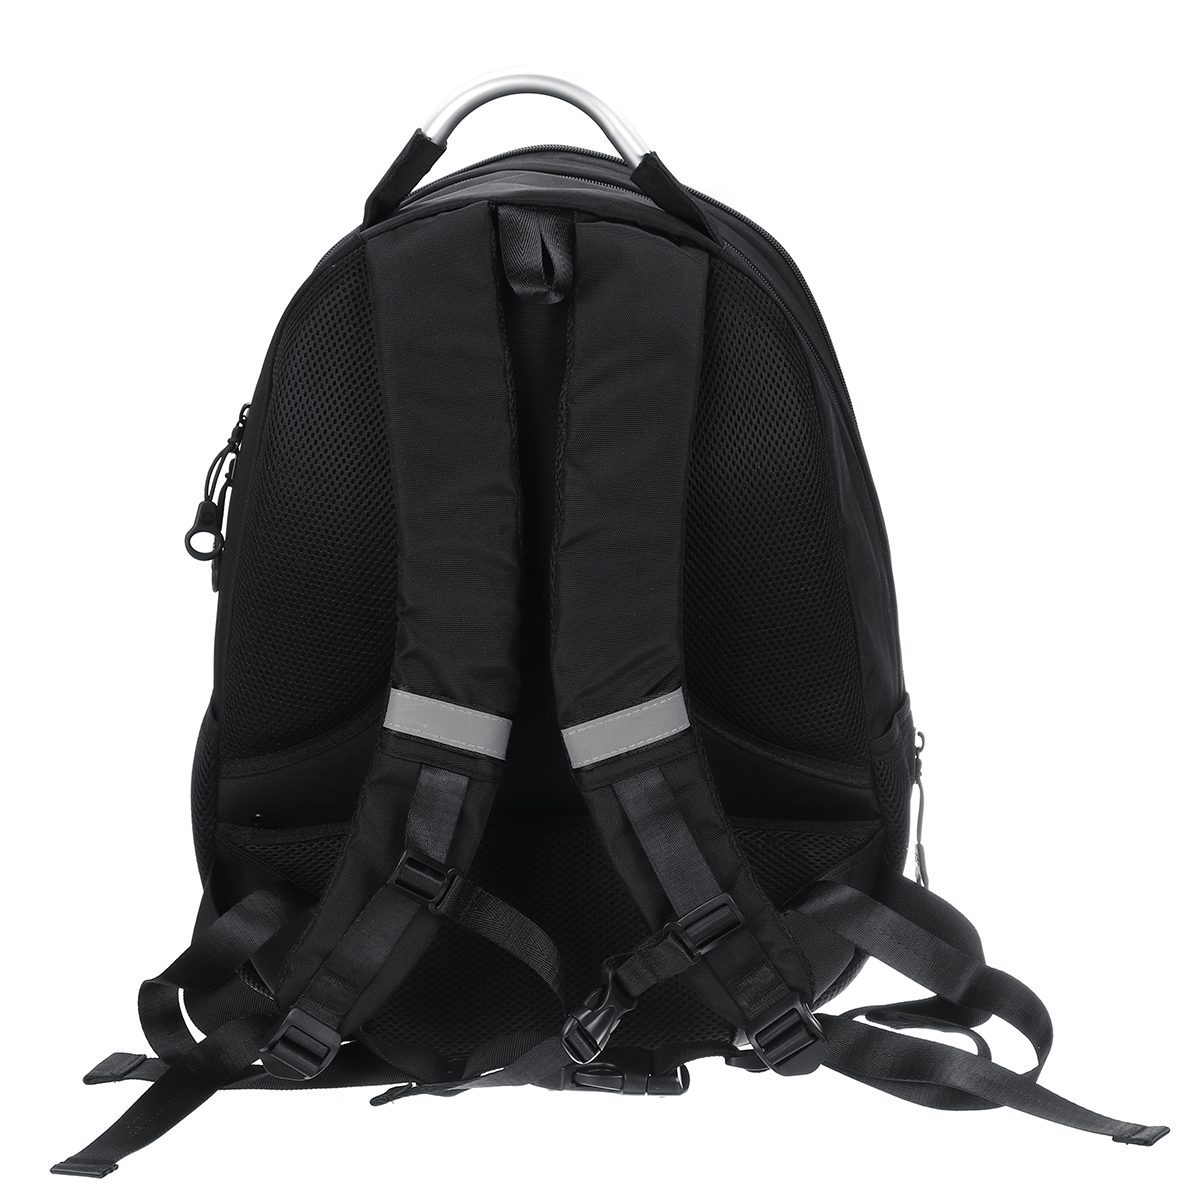 GHOST RACING Motorcycle Backpack Full Face Helmet Riding Bag Shoulder Sport Travel Racing Laptop Backpack Waterproof Universal